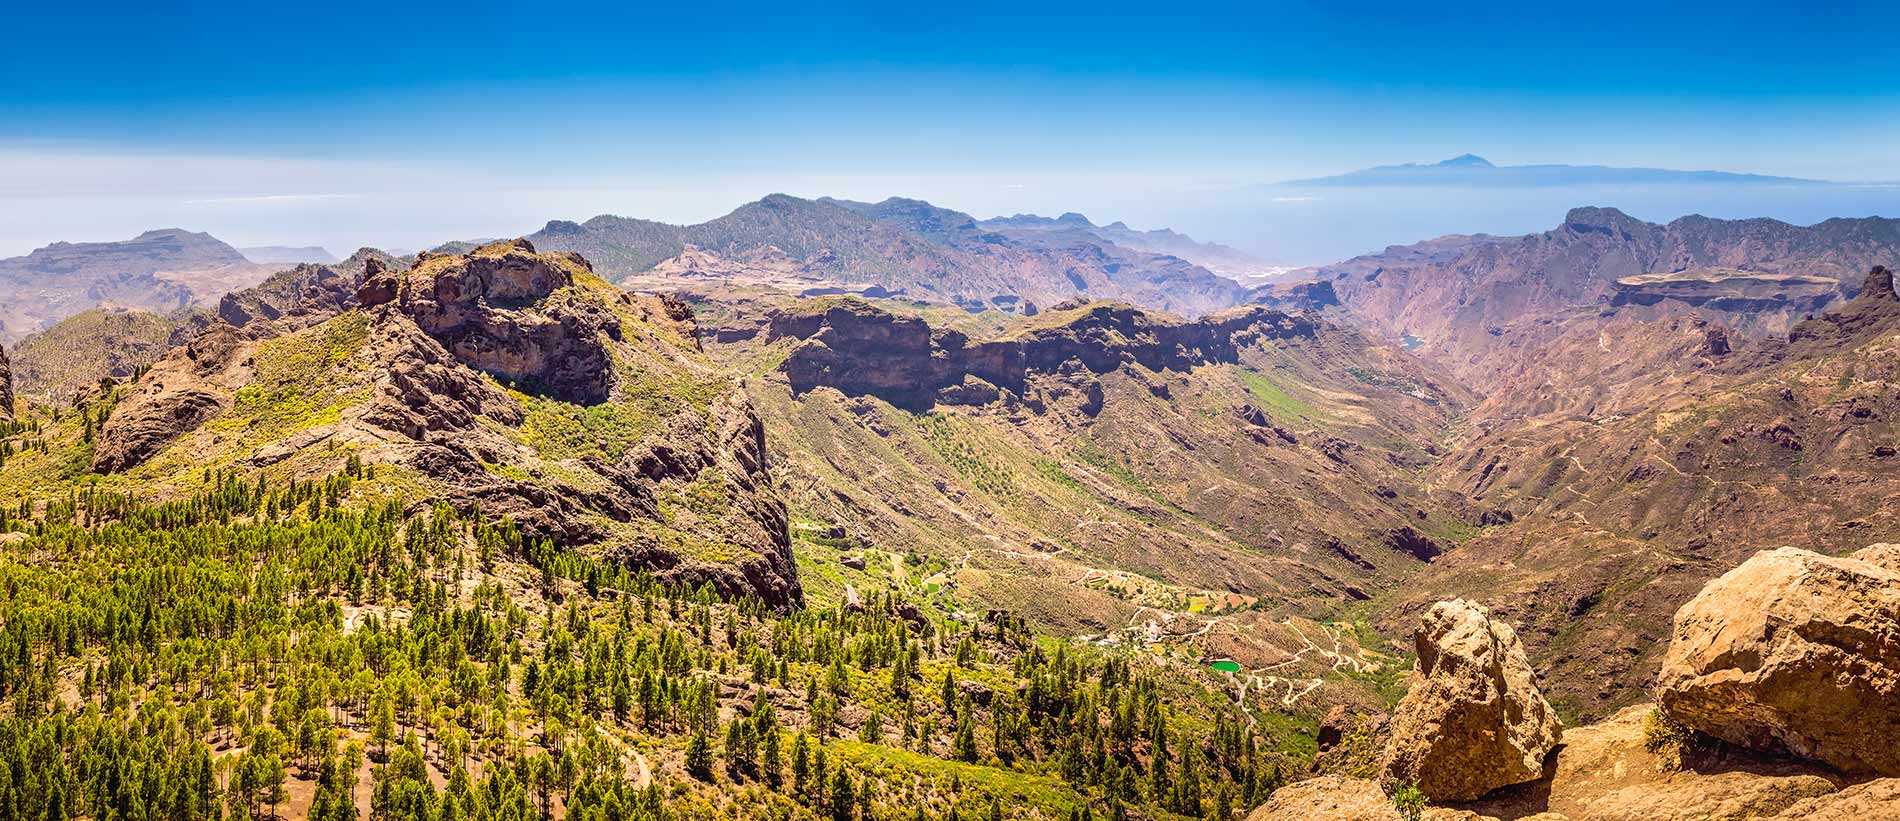 Gran Canaria con Roque Nublo y Tenerife